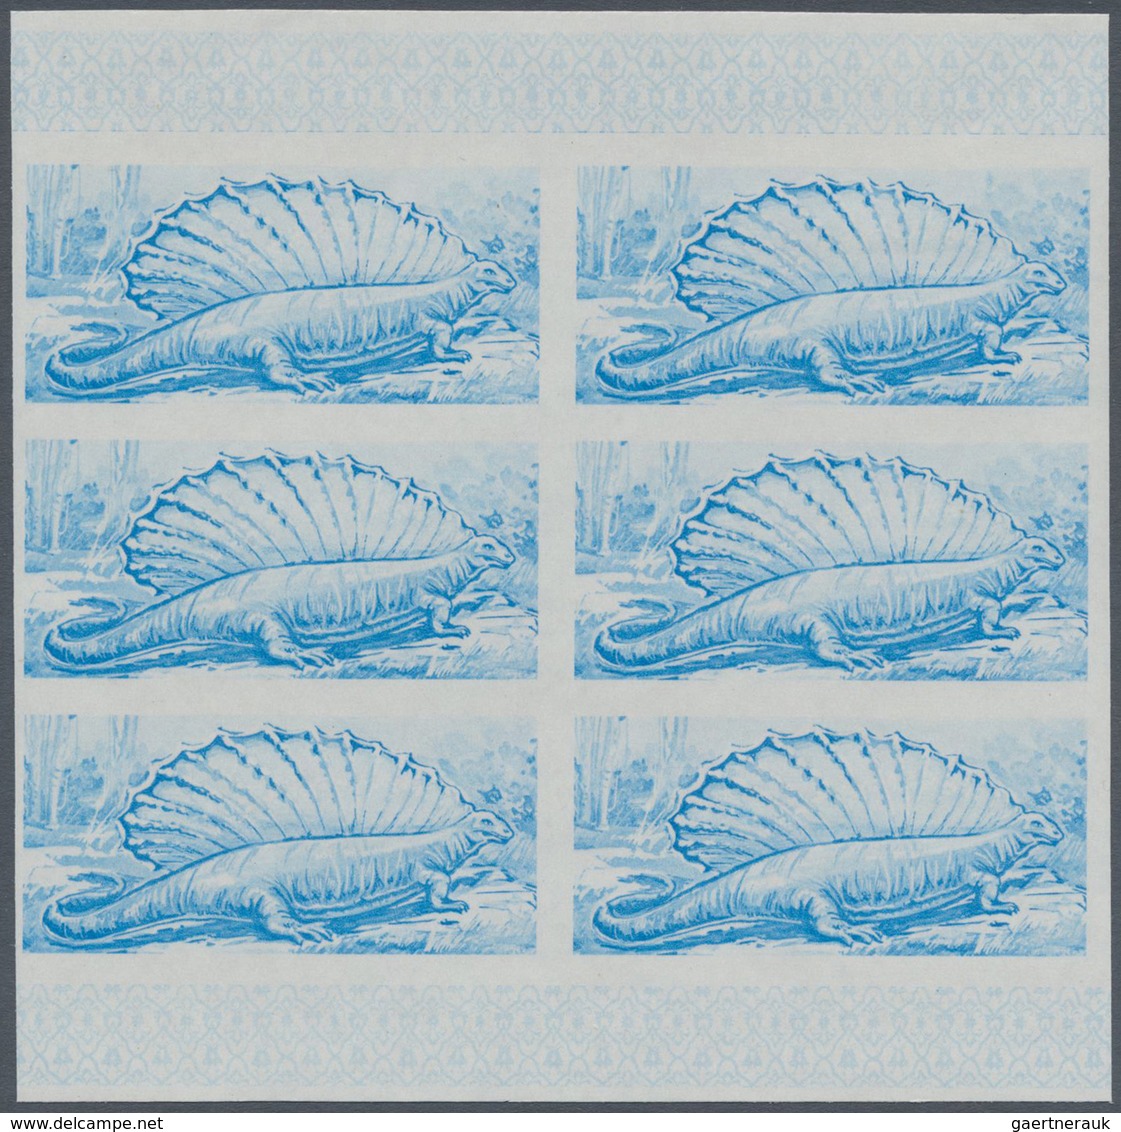 ** Thematik: Tiere-Dinosaurier / Animals-dinosaur: 1968, FUJEIRA: Prehistoric Animals 1r. Airmail Stamp - Vor- U. Frühgeschichte